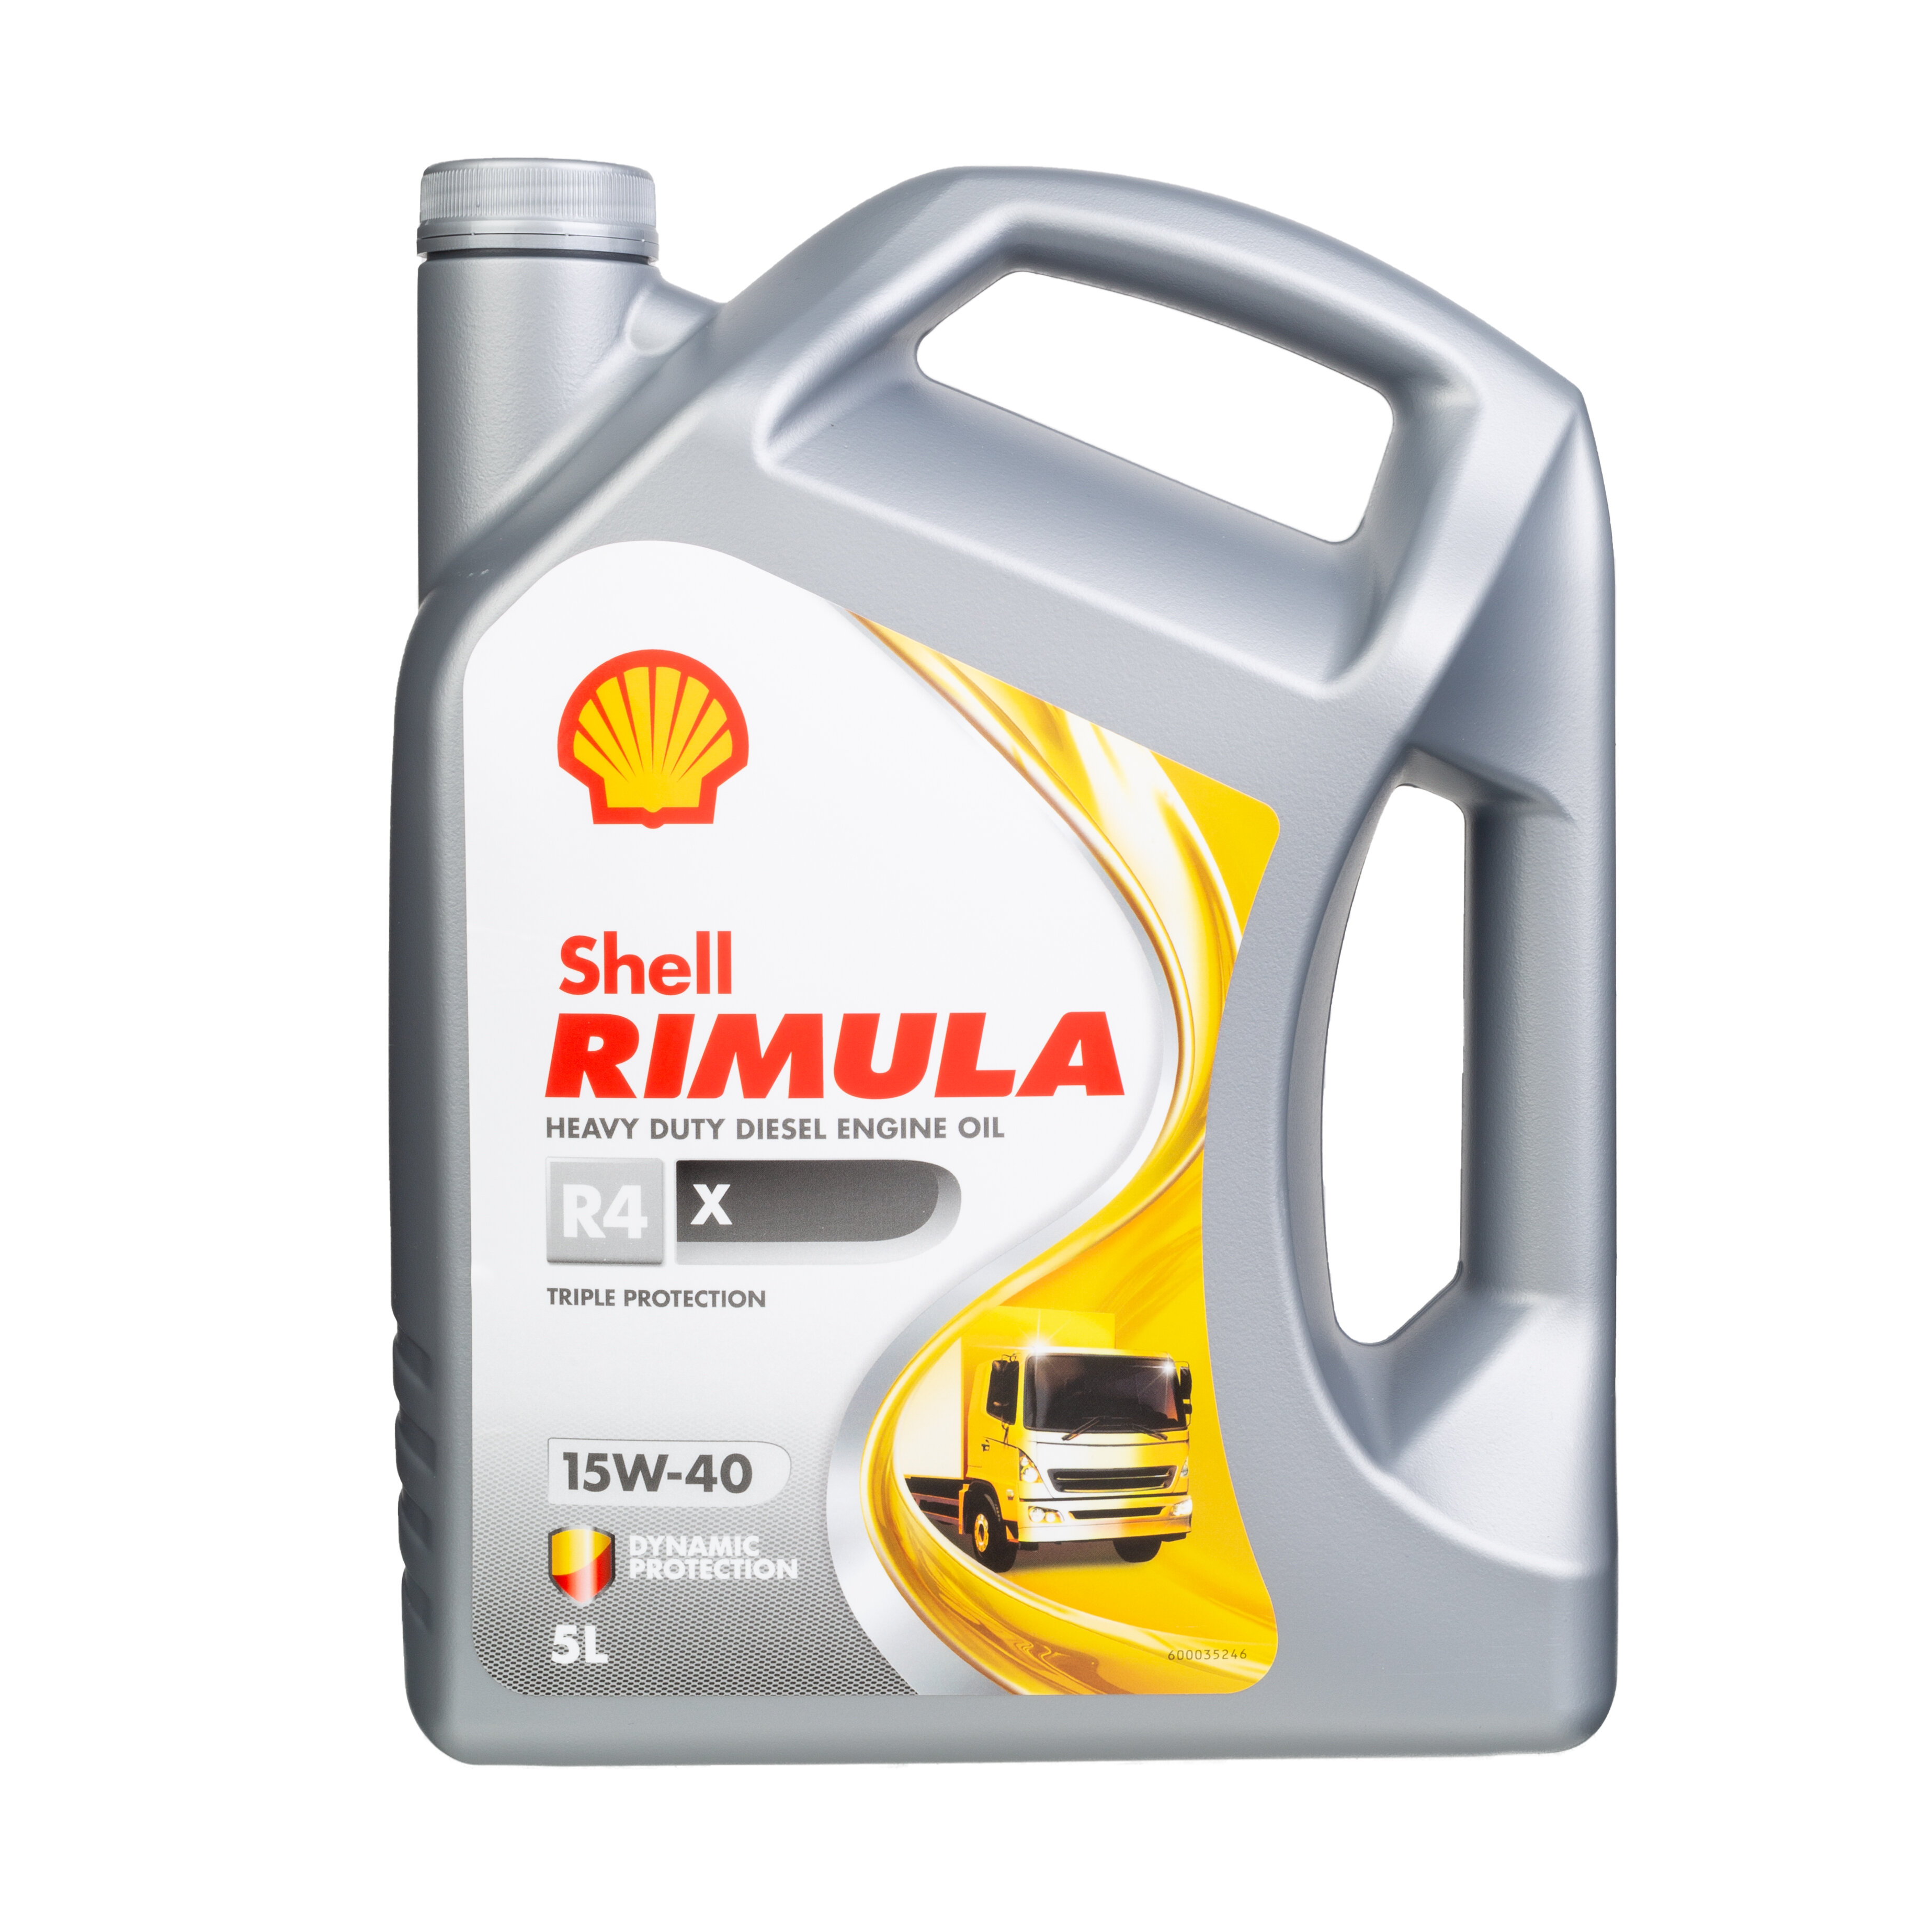 Shell 550044852  Rimula R4 X 15W-40 5Ltr Diesel Engine Heavy Duty Oil